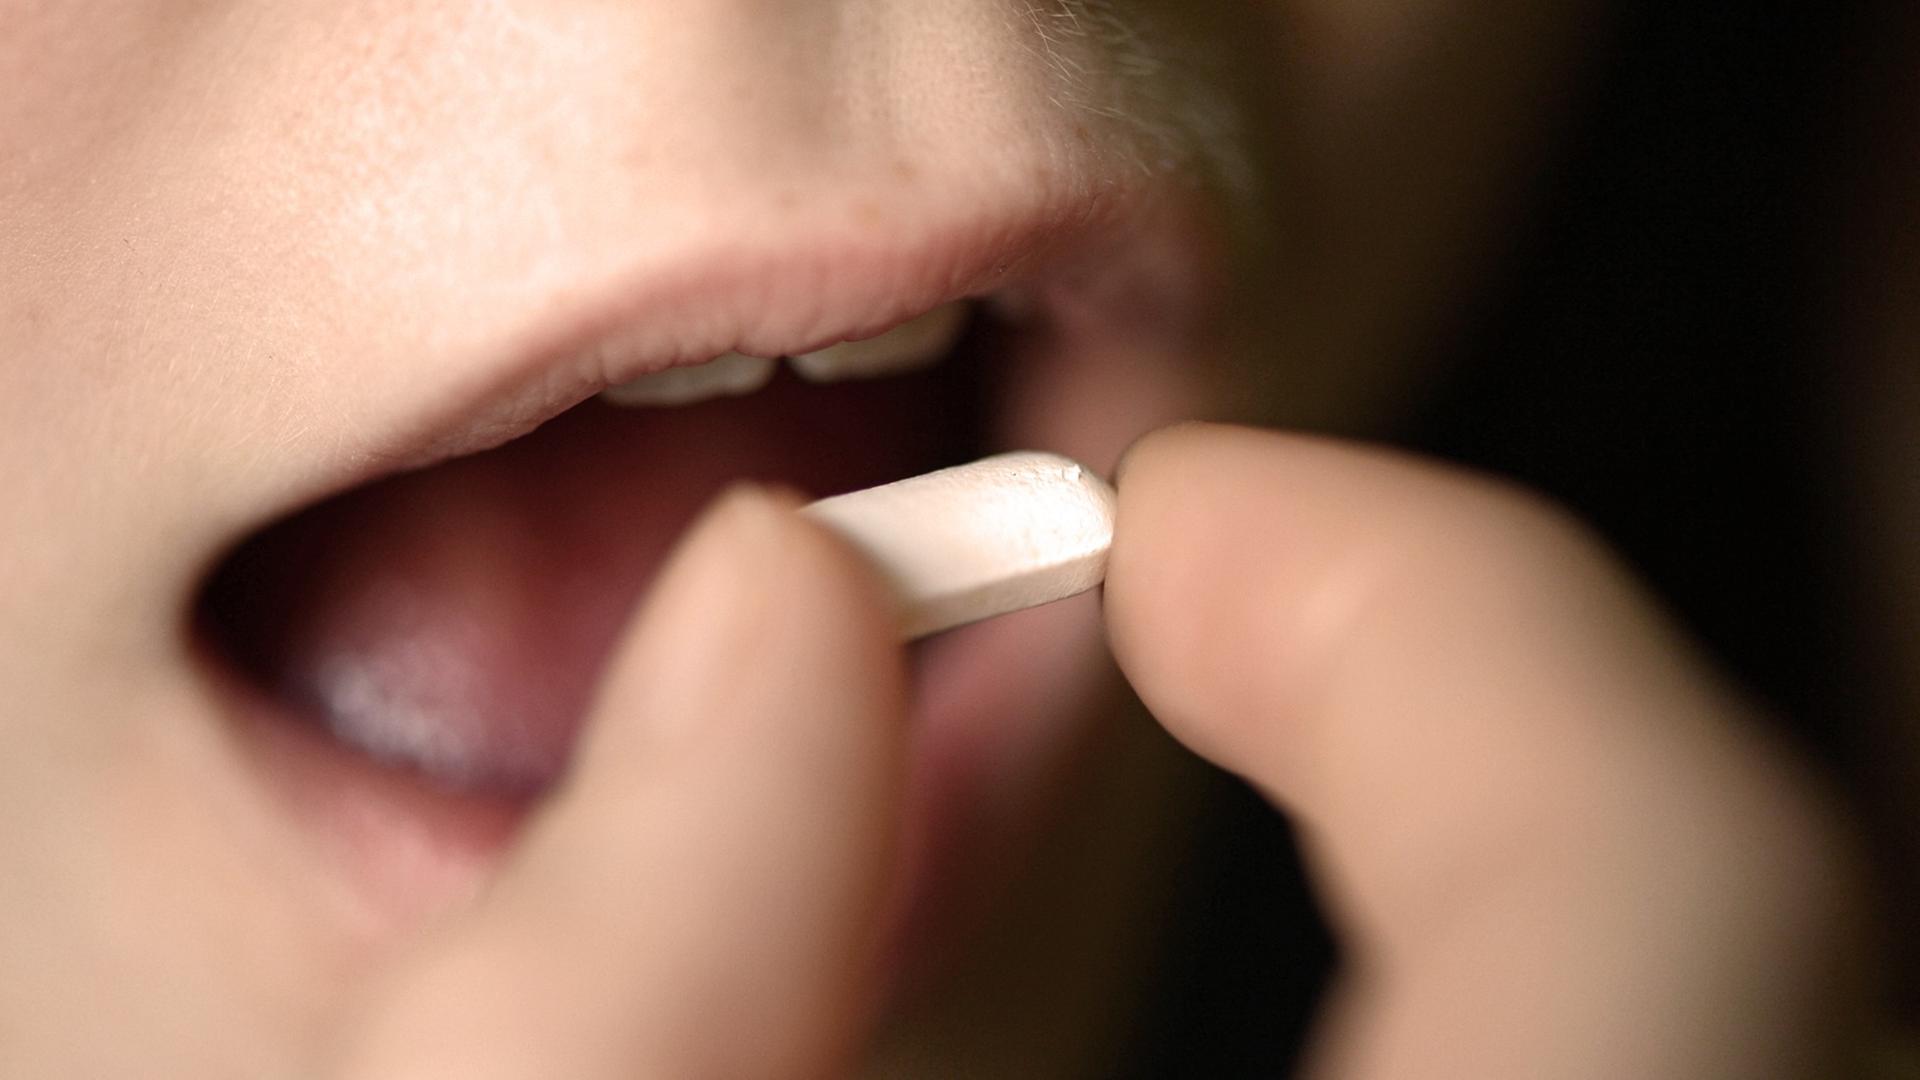 Ein Mädchen nimmt eine weiße Tablette in den Mund.